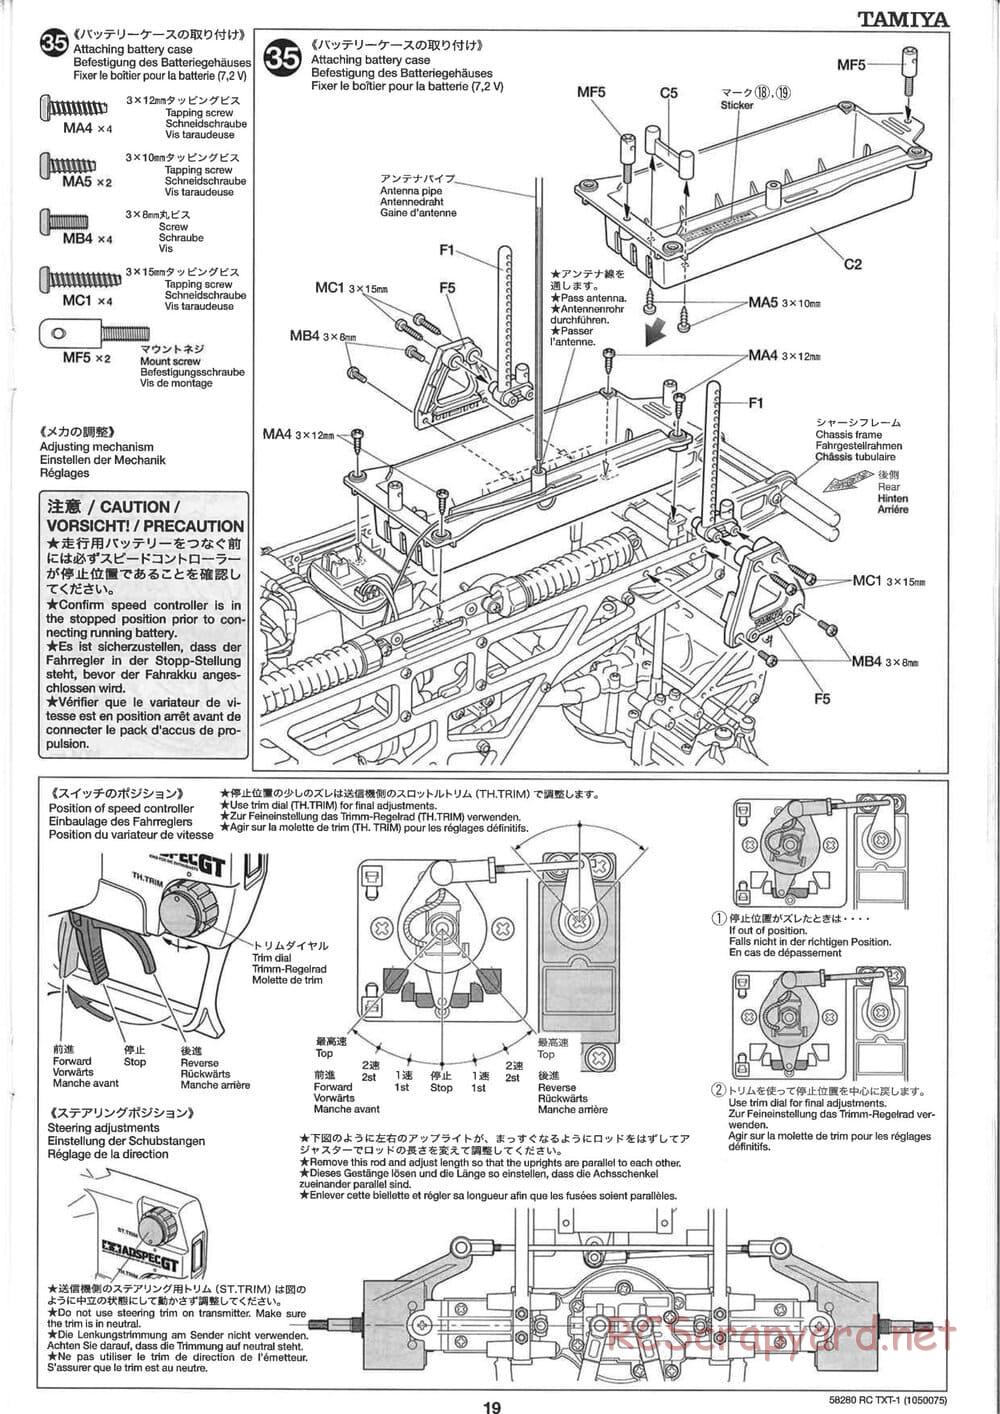 Tamiya - TXT-1 (Tamiya Xtreme Truck) Chassis - Manual - Page 19